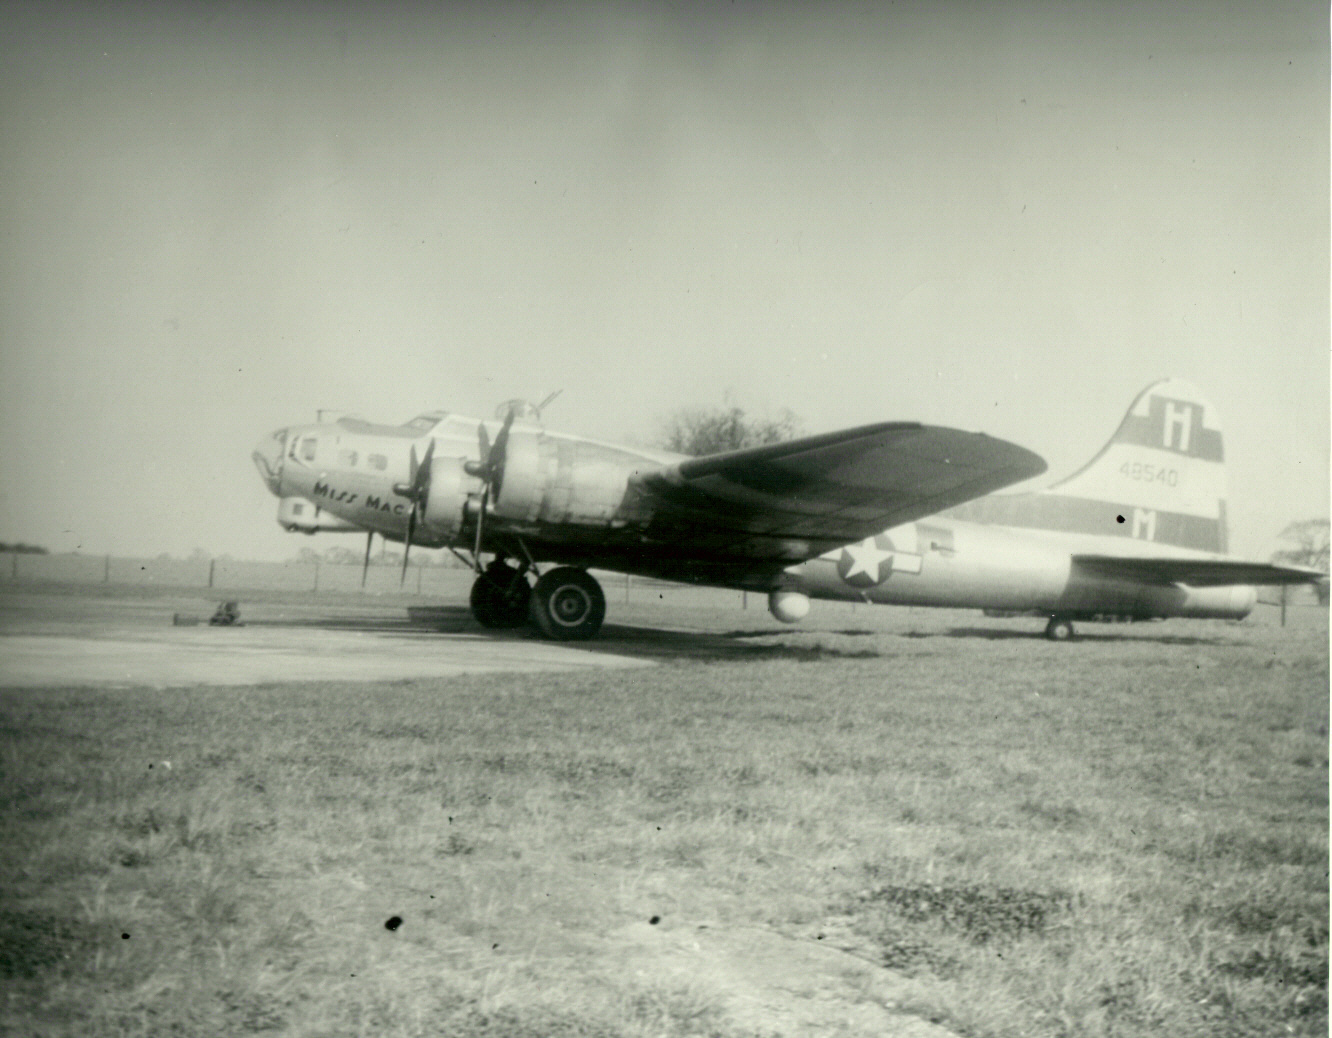 B-17 #44-8540